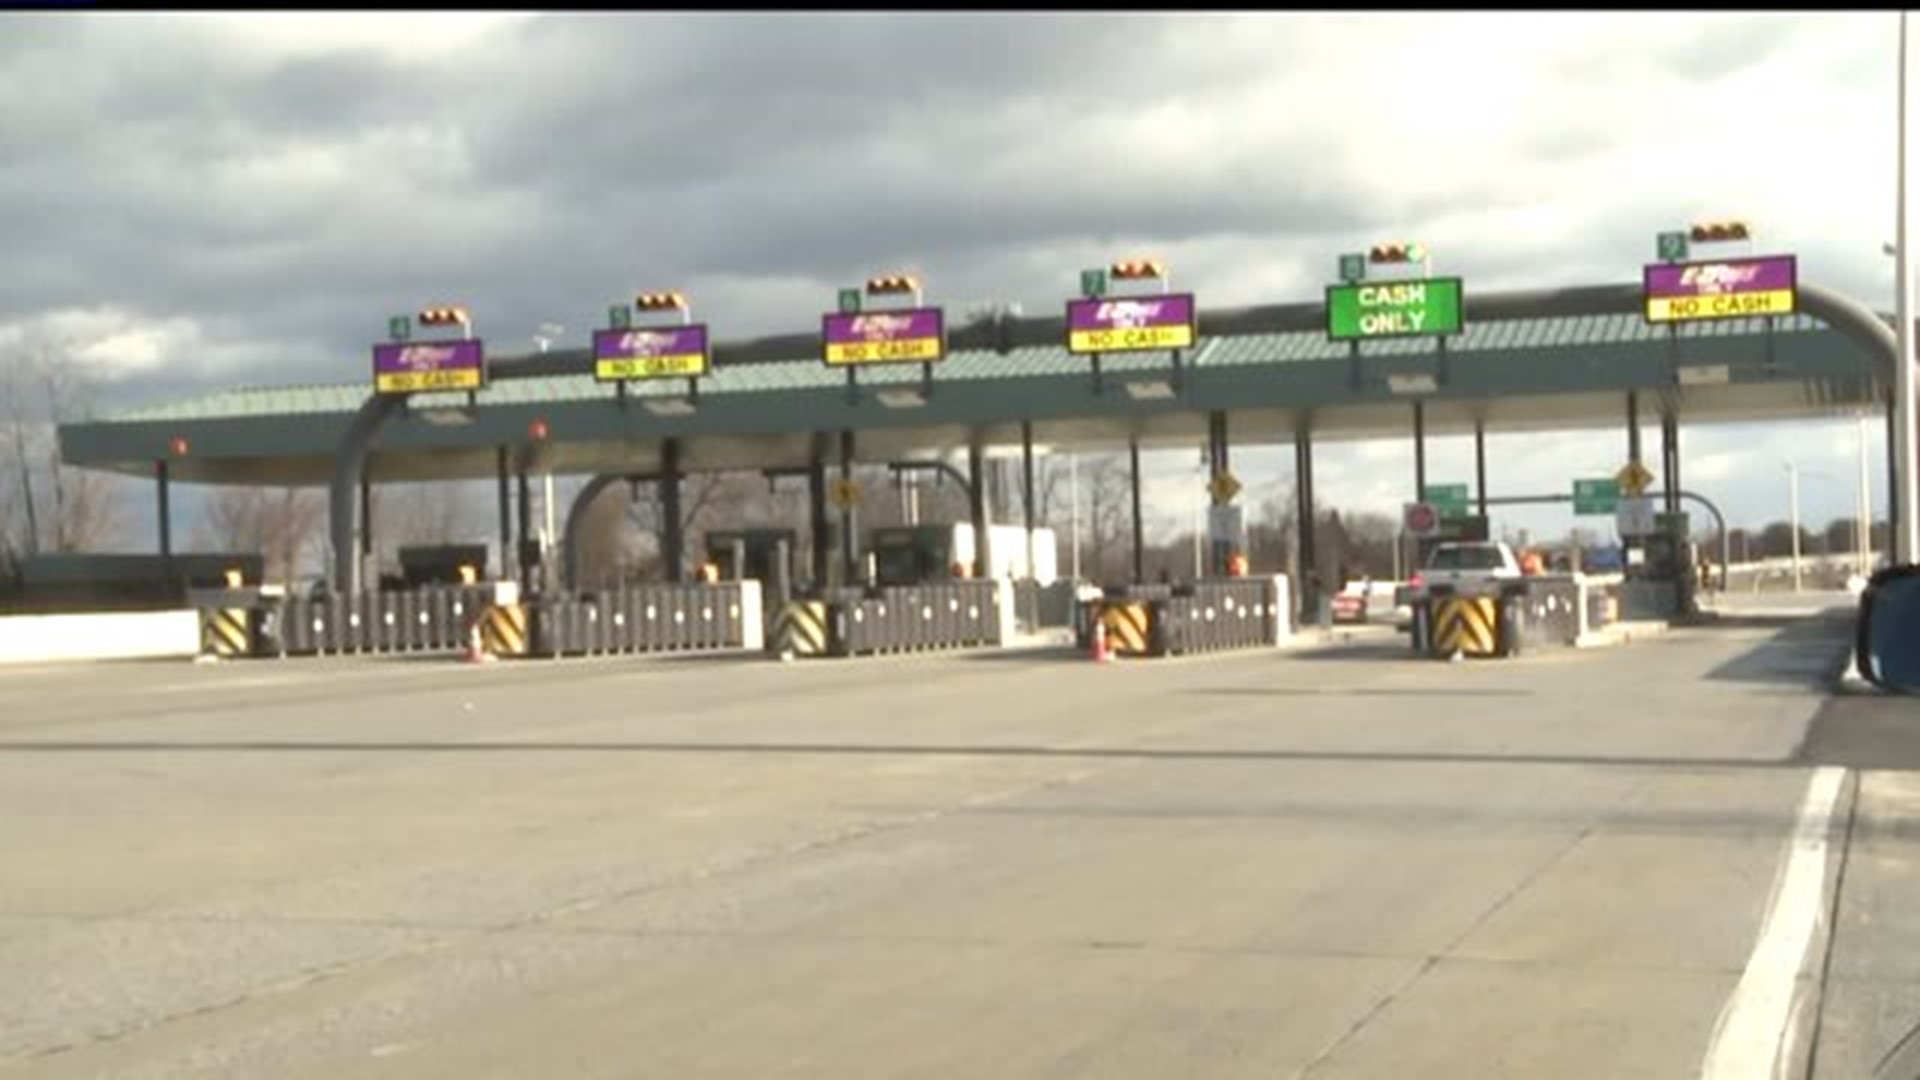 Turnpike tolls increase